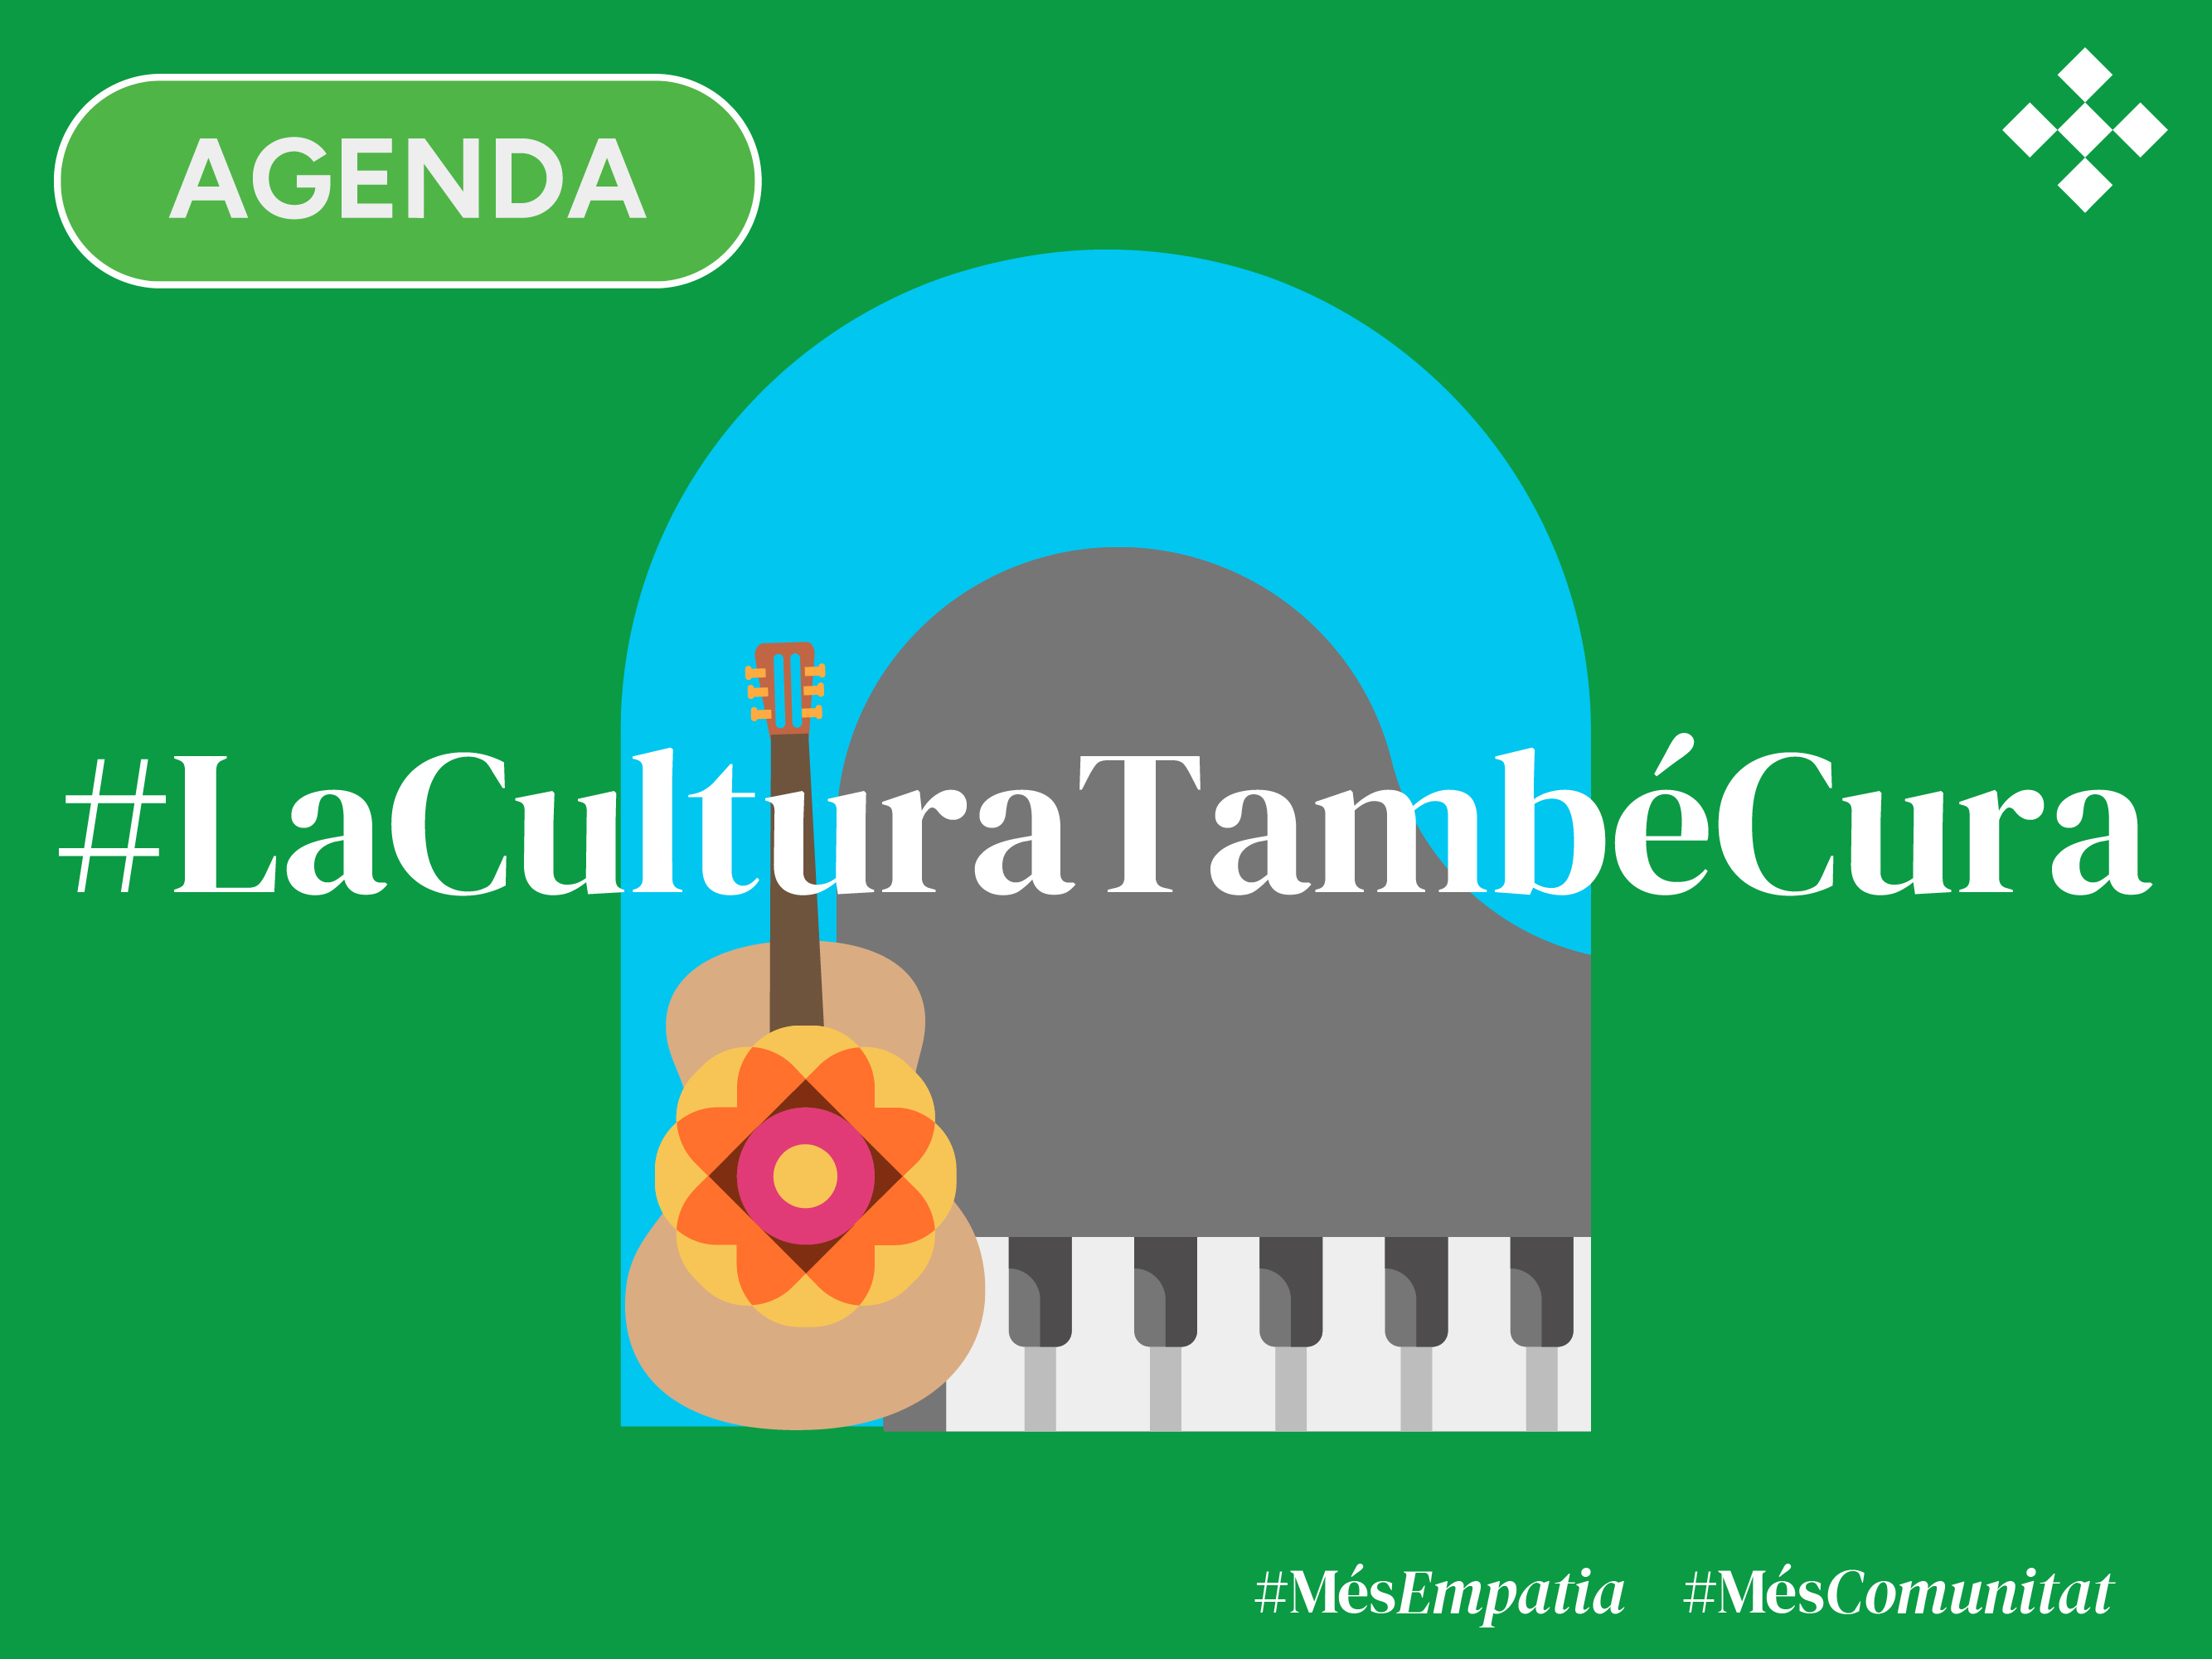 Sant Pau s’omple de música i cultura dins el marc #LaCulturaTambéCura